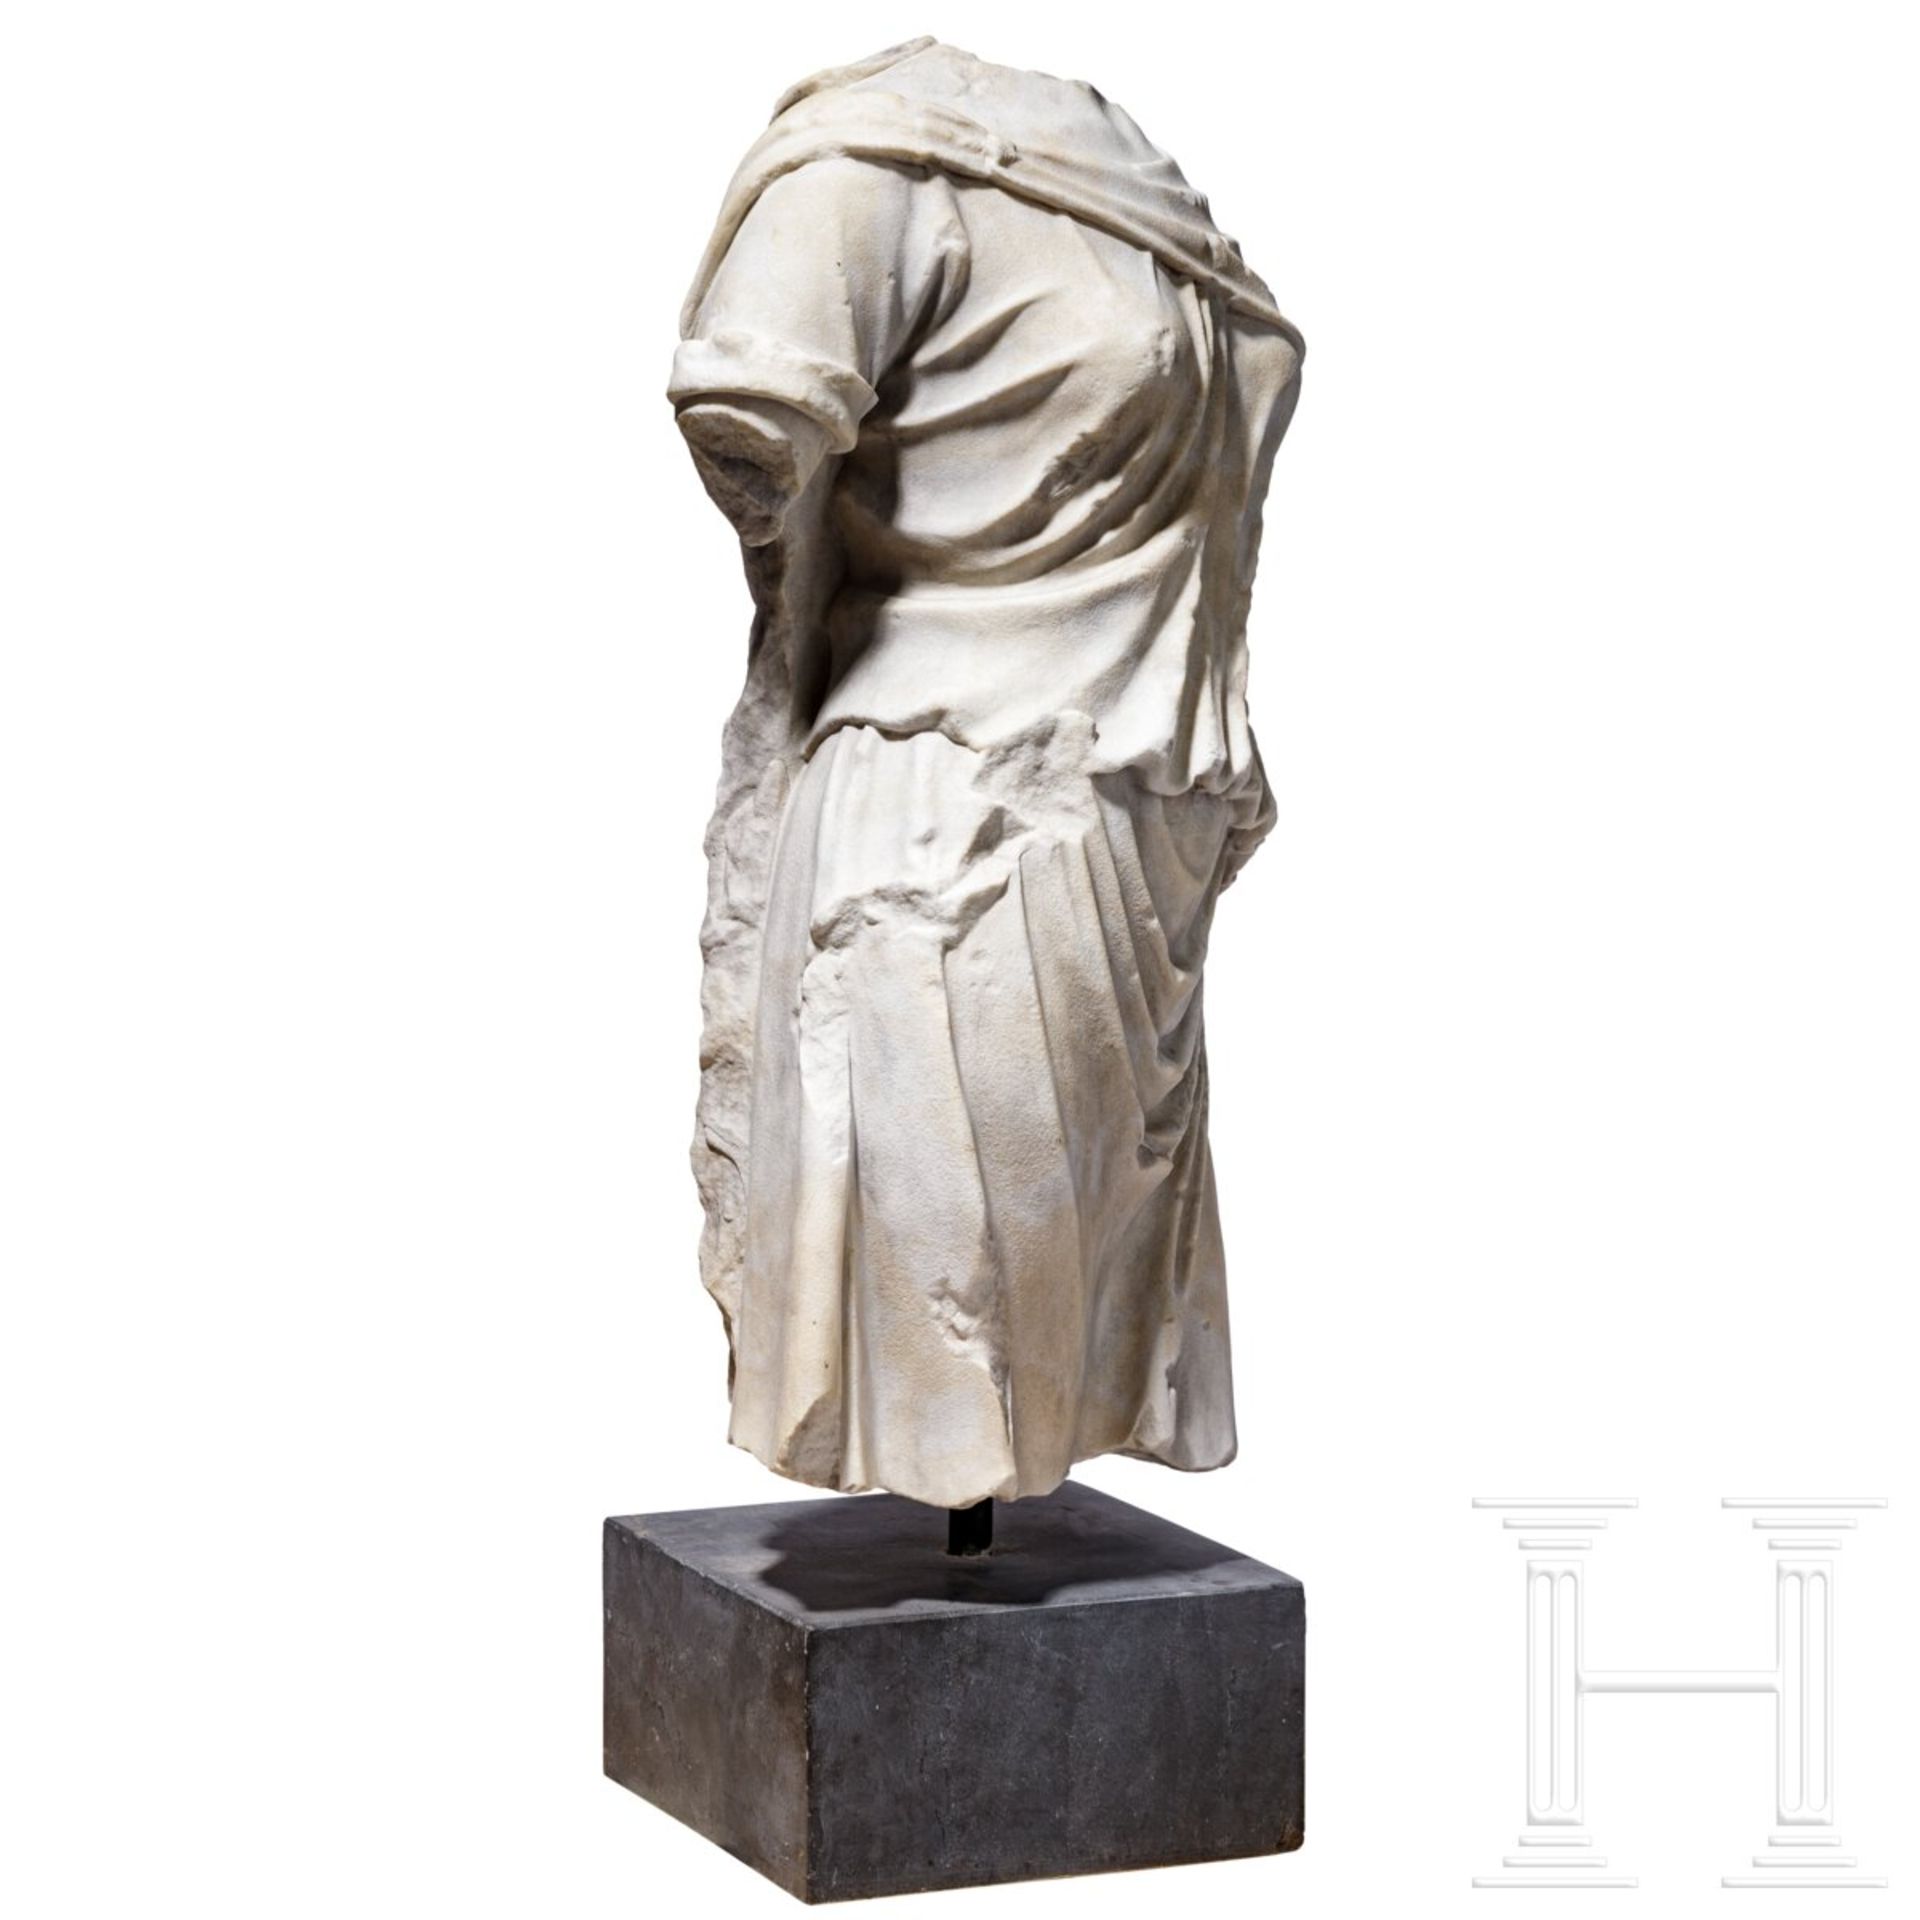 Klassizistischer Marmortorso nach dem Vorbild einer antiken Artemis-Statue, um 1800 - frühes 19. Jhd - Bild 2 aus 7